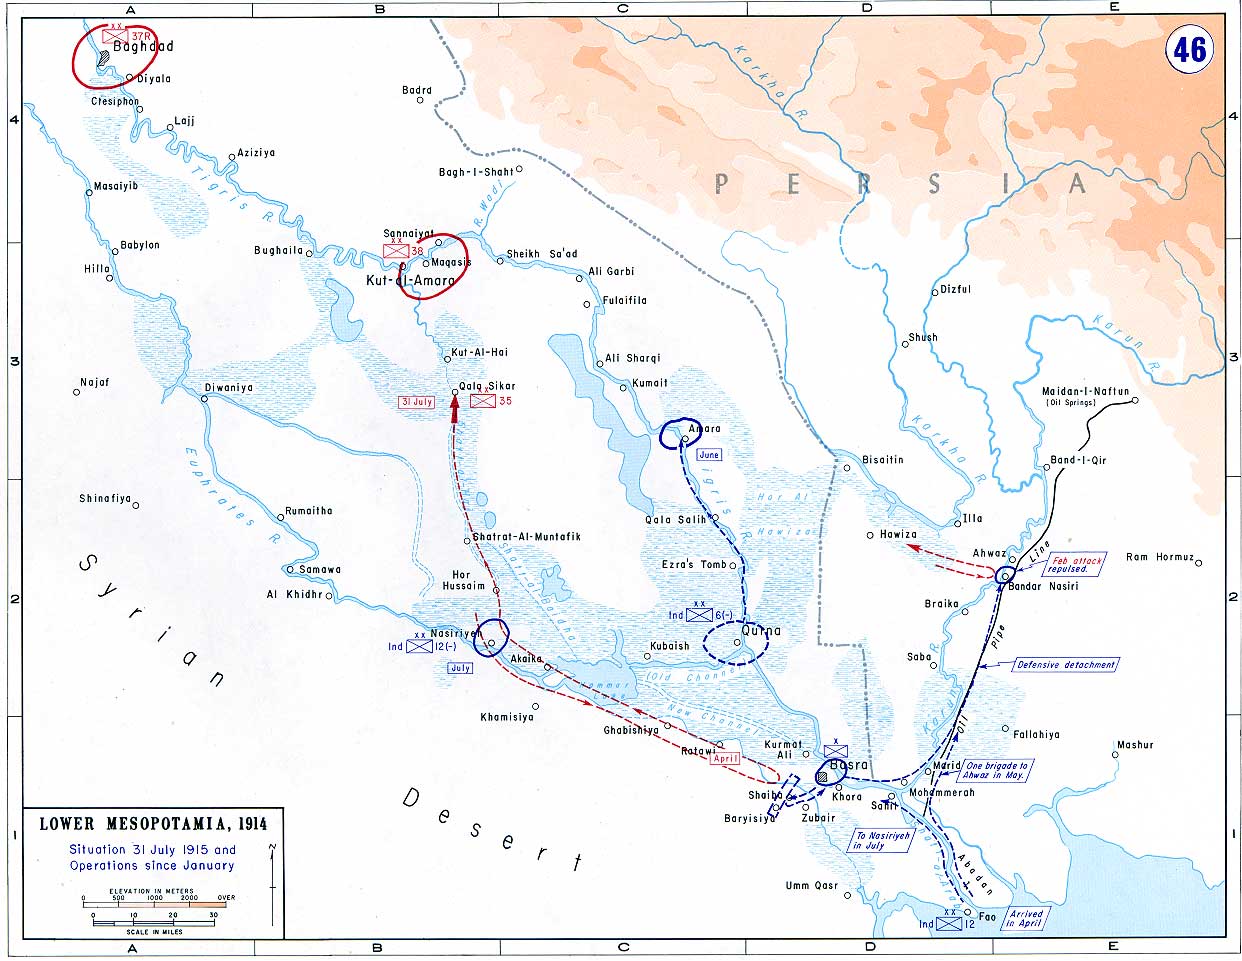 Map of Mesopotamia January-July 1915